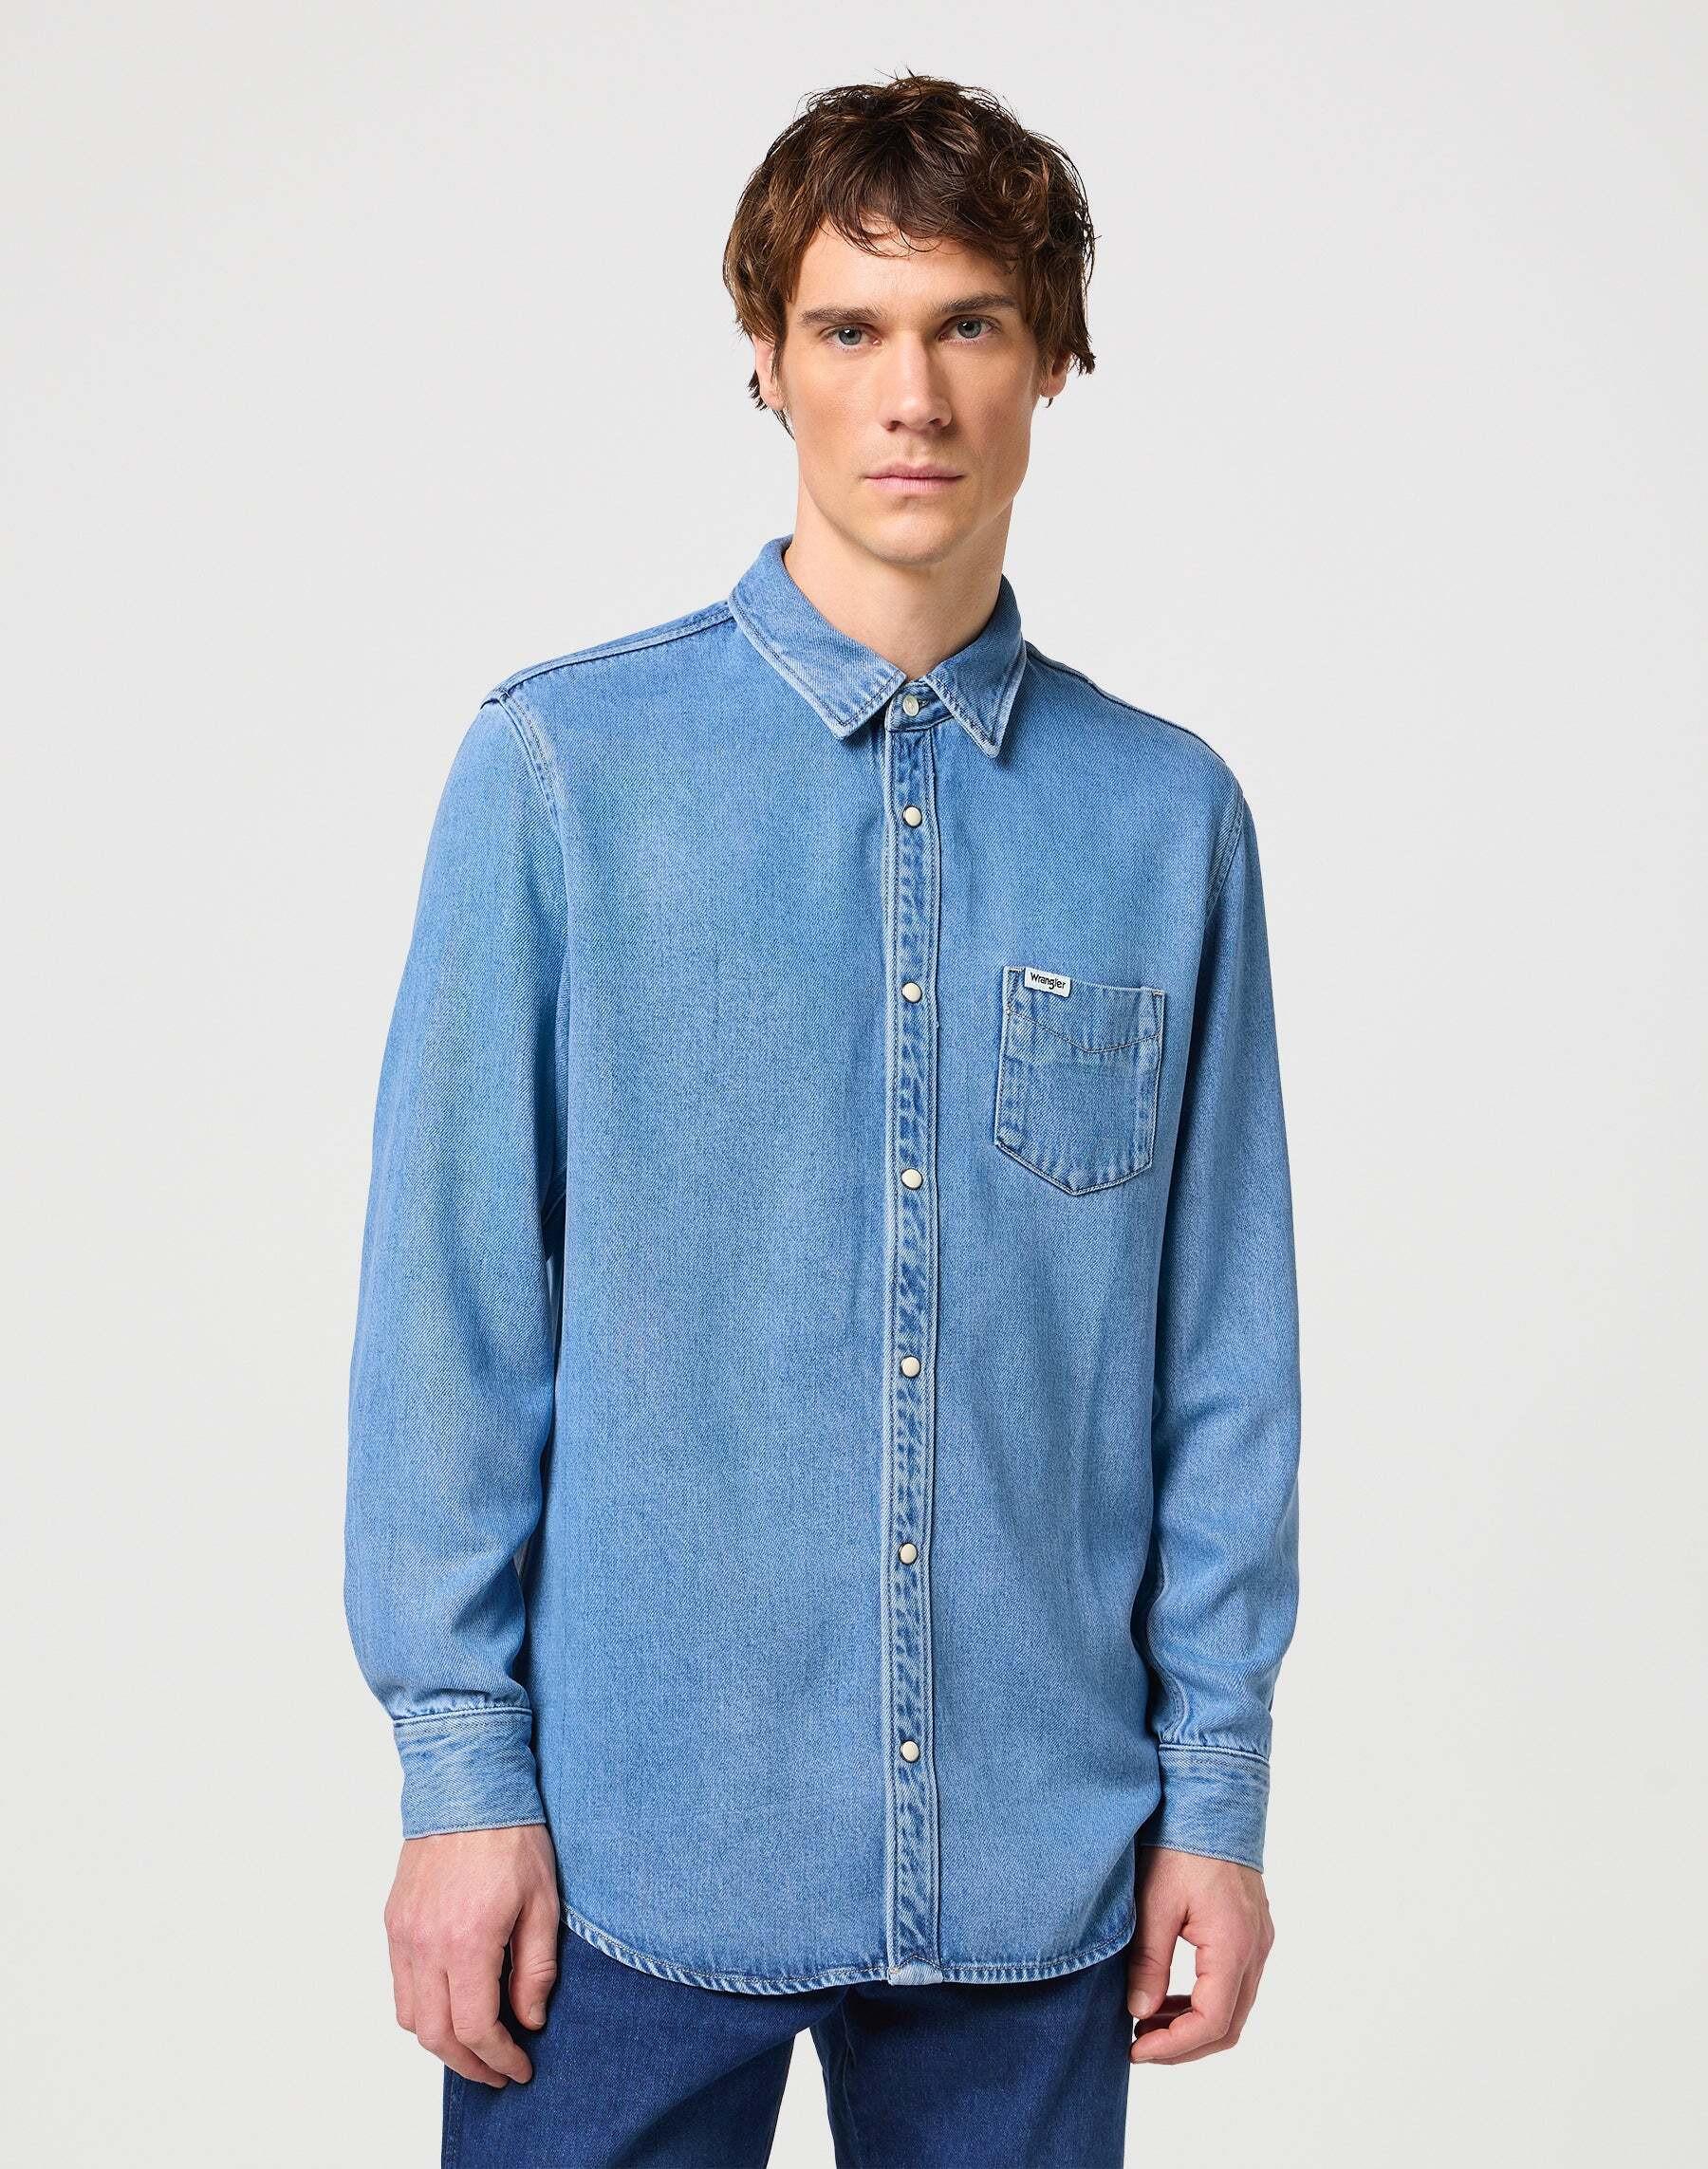 Hemden Longsleeves One Pocket Shirt Herren Blau S von Wrangler